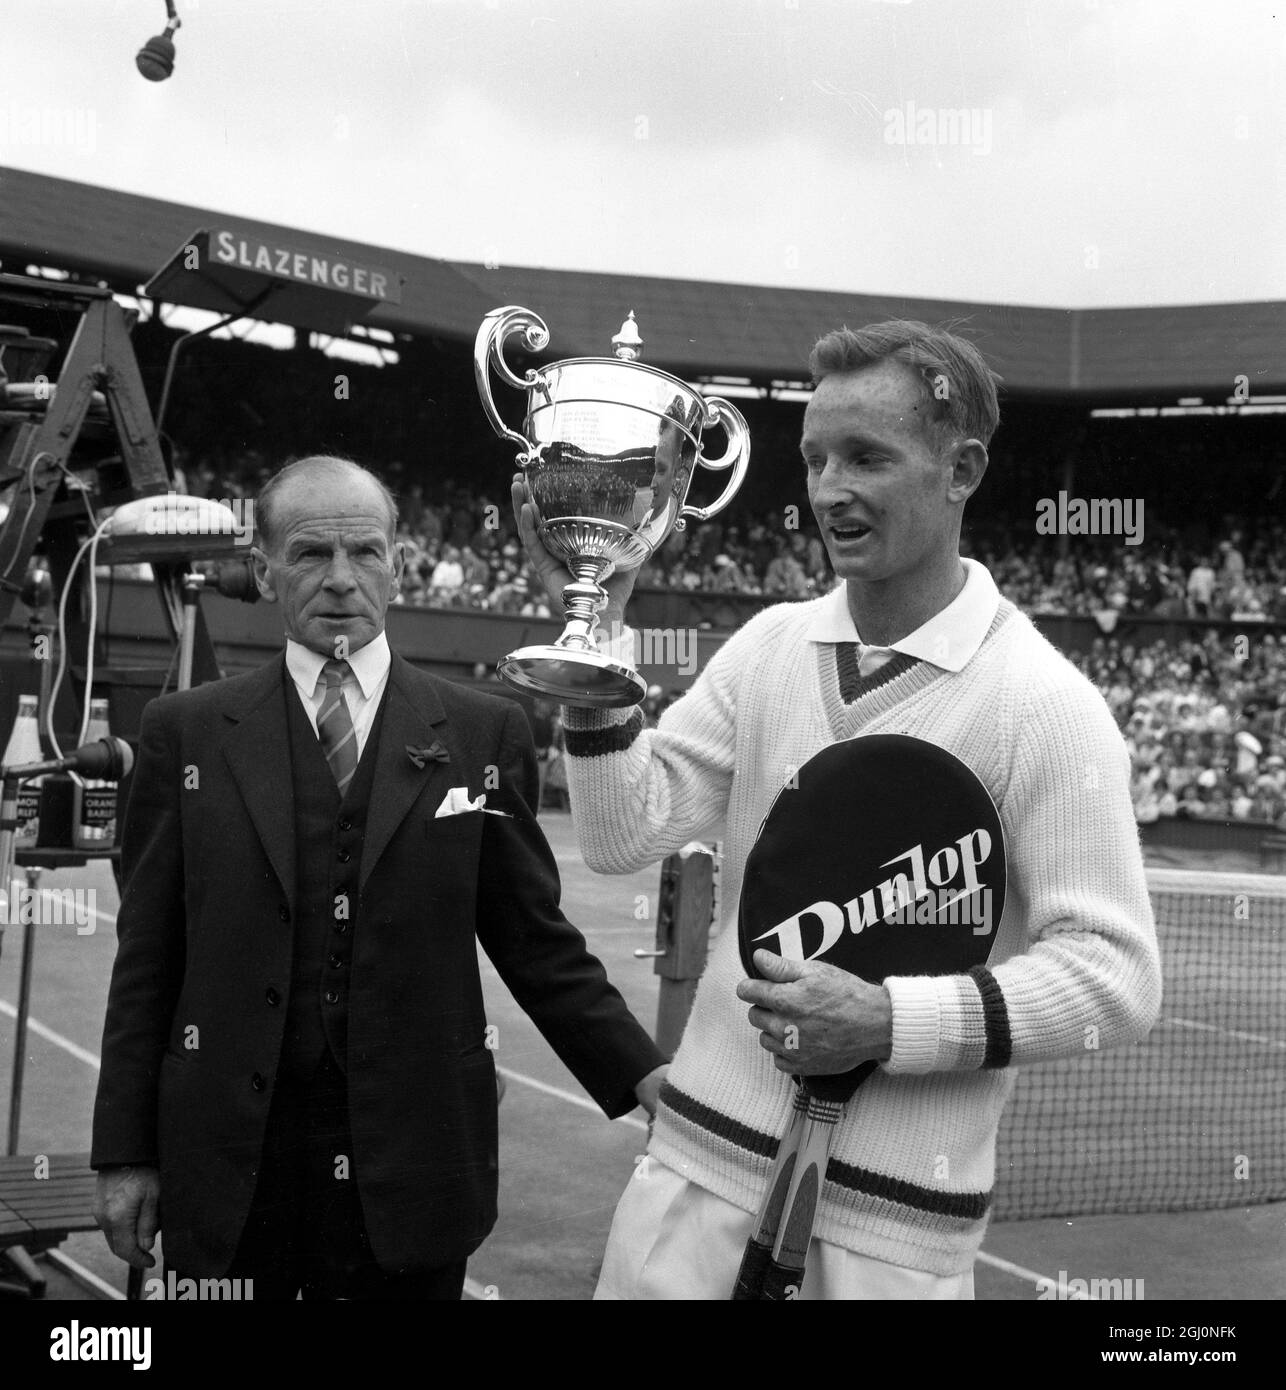 Der australische Rod Laver ging heute, der heißeste Favorit seit Jahren, auf den Platz in Wimbledon, um den Grand Slam abzuschließen, den Donald Budge zuletzt 1938, die Australian, French, Wimbledon und die United States Championships errungen hat. Der australische Mulligan kämpfte tapfer, aber Laver stürmte am 6-2 6-2 6-1 6. Juli 1962 zum Sieg Stockfoto